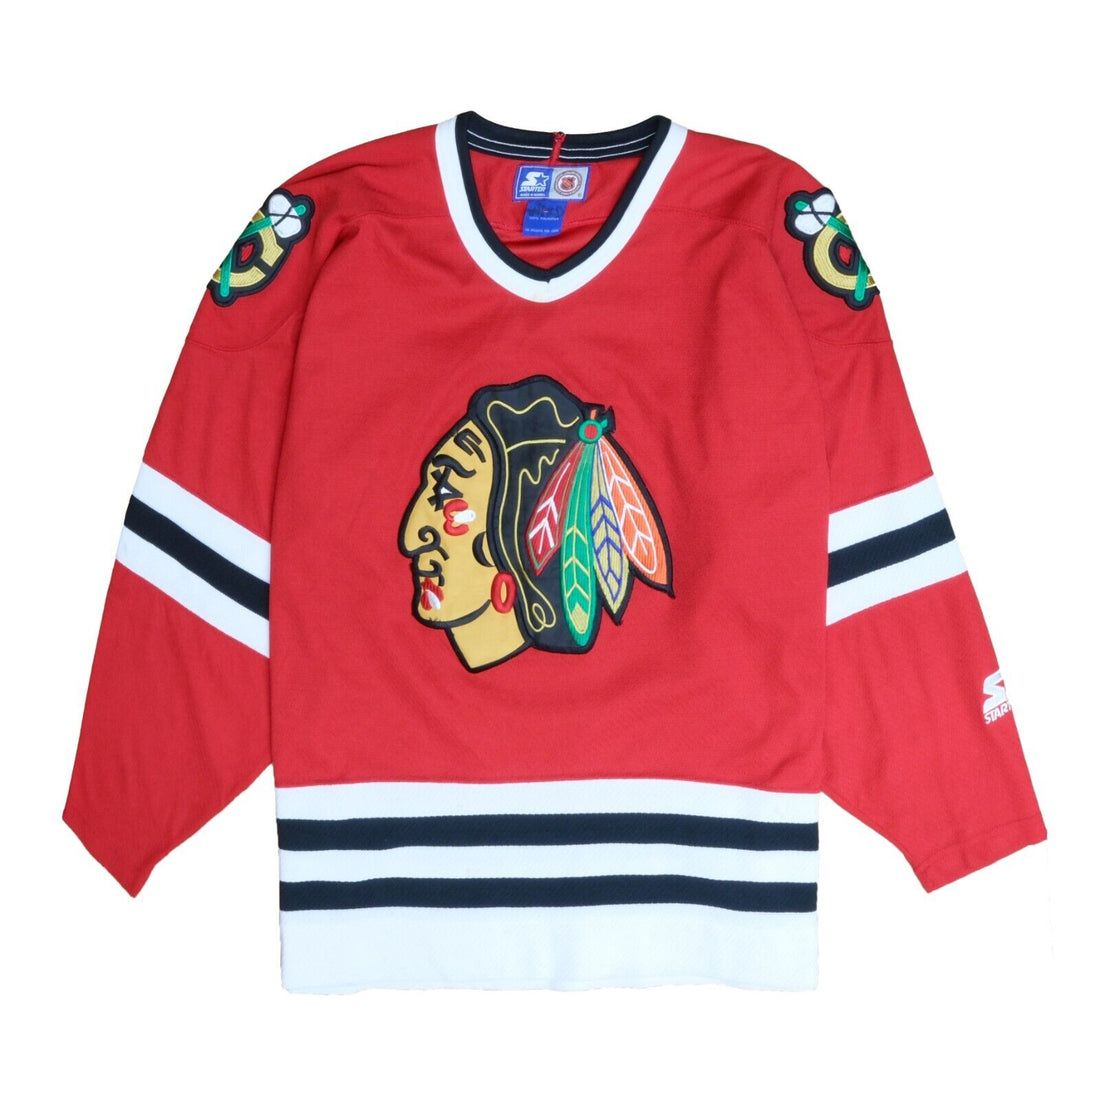 Vintage Chicago Blackhawks Starter Jersey Size Large Red 90s NHL